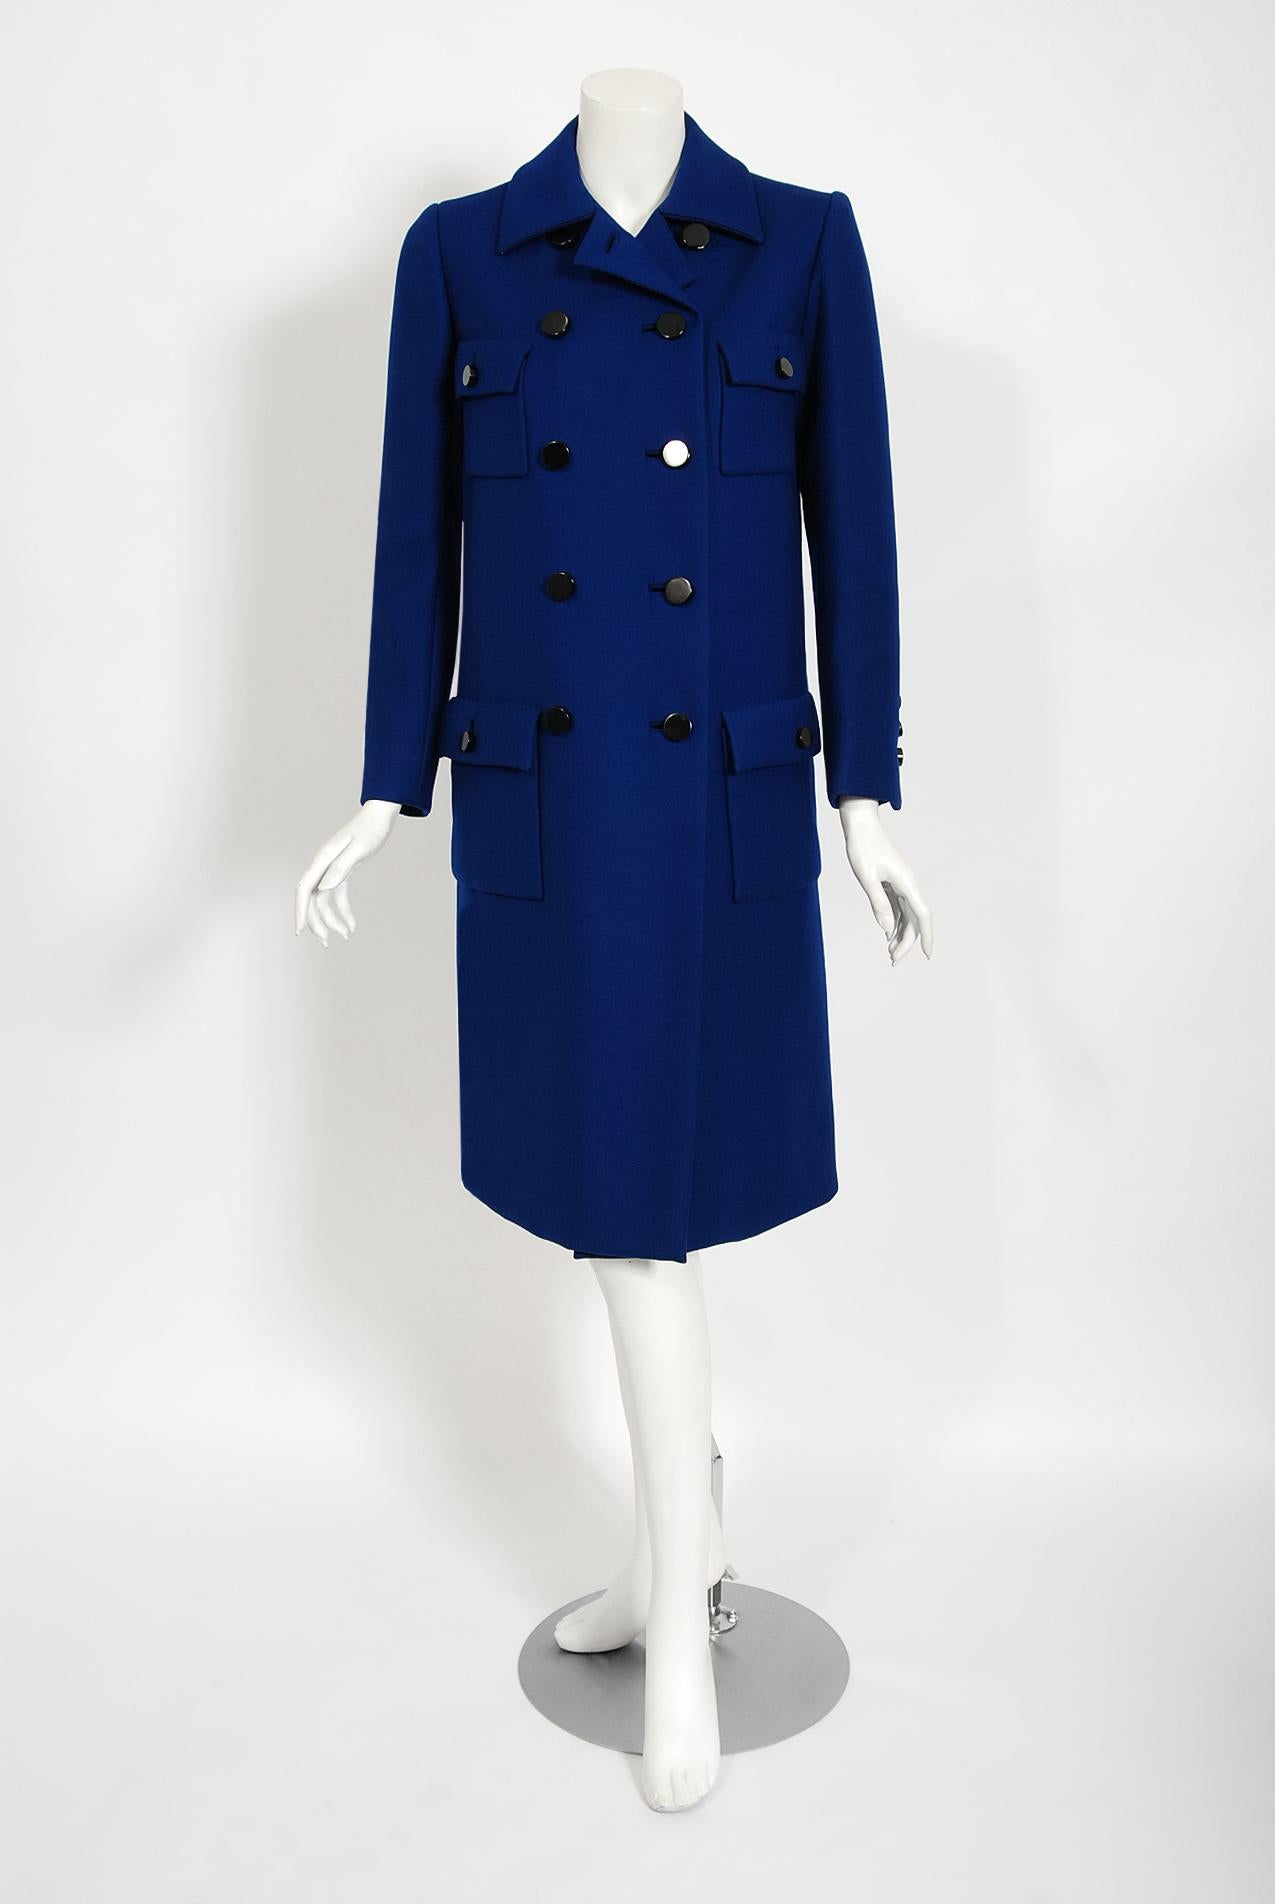 Ce manteau intemporel de Norman Norell, d'un bleu royal des plus chics, illustre son mélange de qualité couture et de style typiquement américain. Ce magnifique vêtement, qui date de sa collection automne-hiver 1969-70, présente une silhouette a